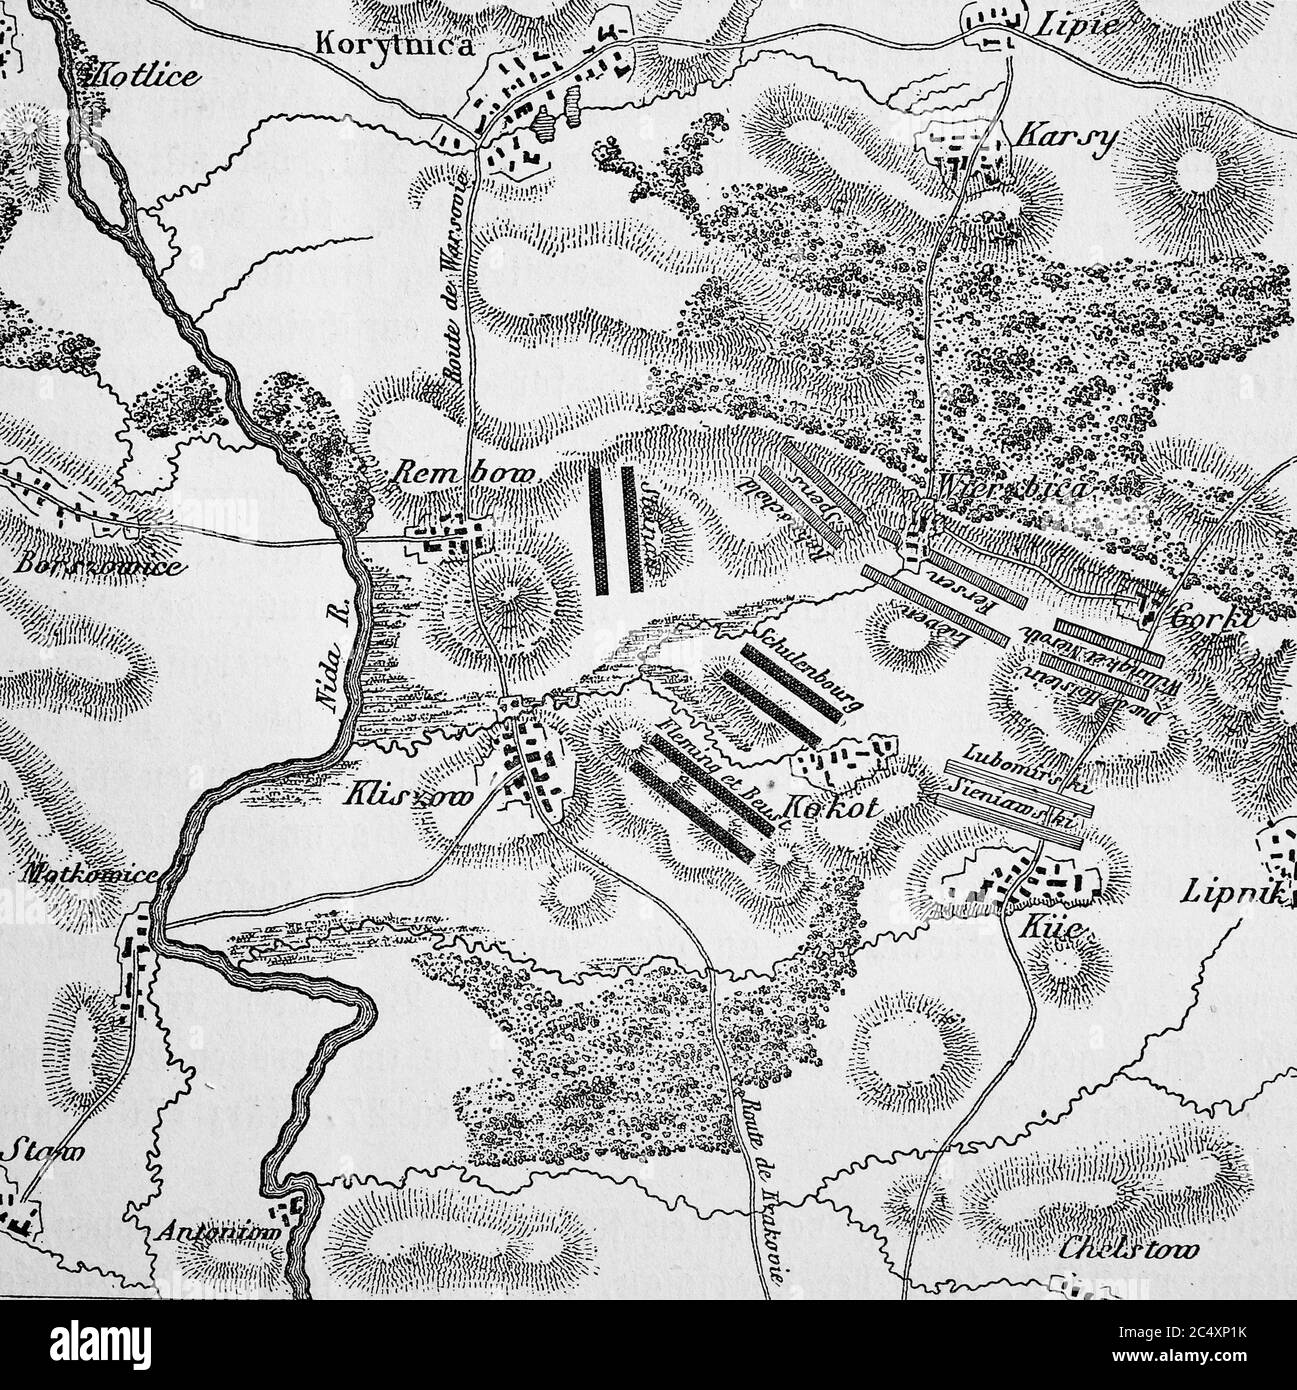 Piano della battaglia di kliszów il 19 luglio 1702 la Polonia, nella battaglia di kliszów, gli eserciti di Carlo XII si levarono il 19 luglio 1, 7, 2 e Augusto II. Klissow è un luogo a sud di Kielce / Plan der Schlacht bei Klissow am 19. Juli 1702, Polen, in der Schlacht bei Klissow standen sich am 19. 1702 die Armeen von Karl XII. Und gegenueber. Klissow ist in Ort suedlich von Kielce Foto Stock